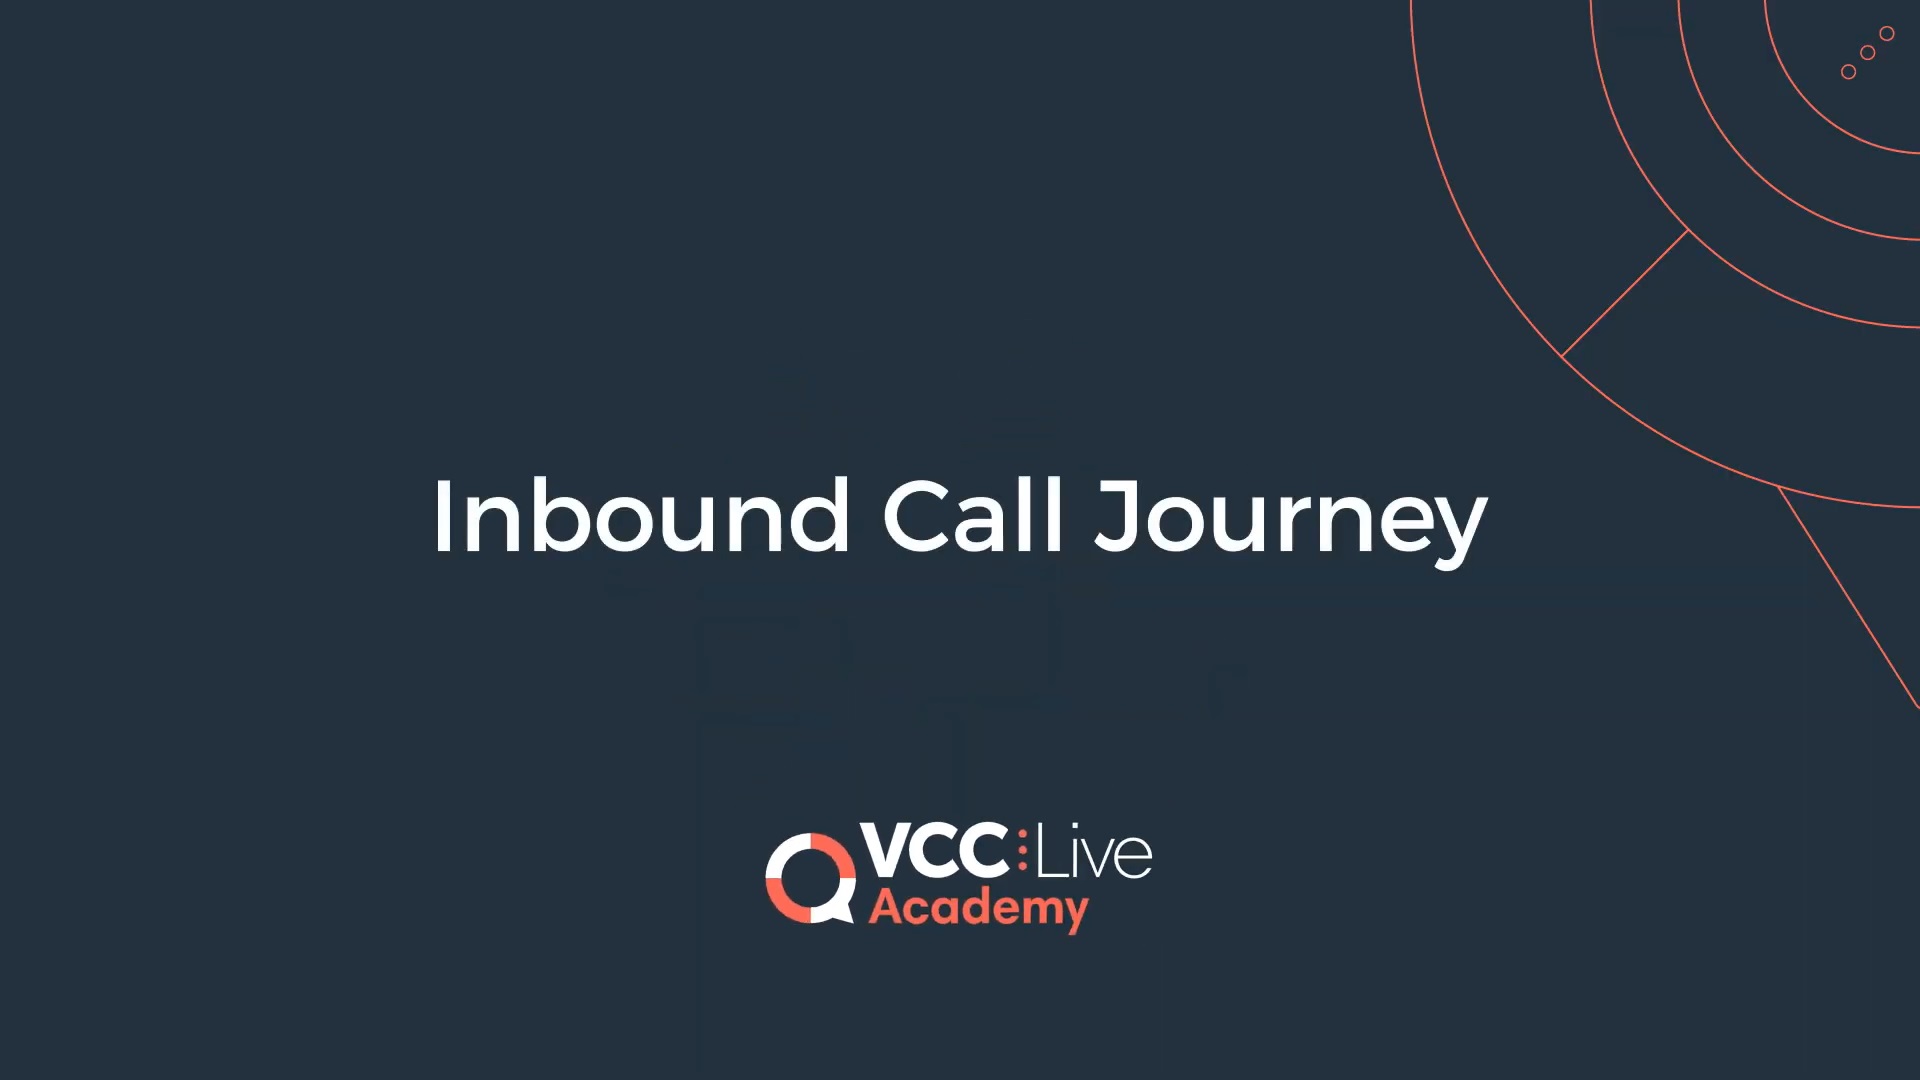 https://vcc.live/wp-content/uploads/2022/08/inbound-metrics-inbound-call-journey.jpg